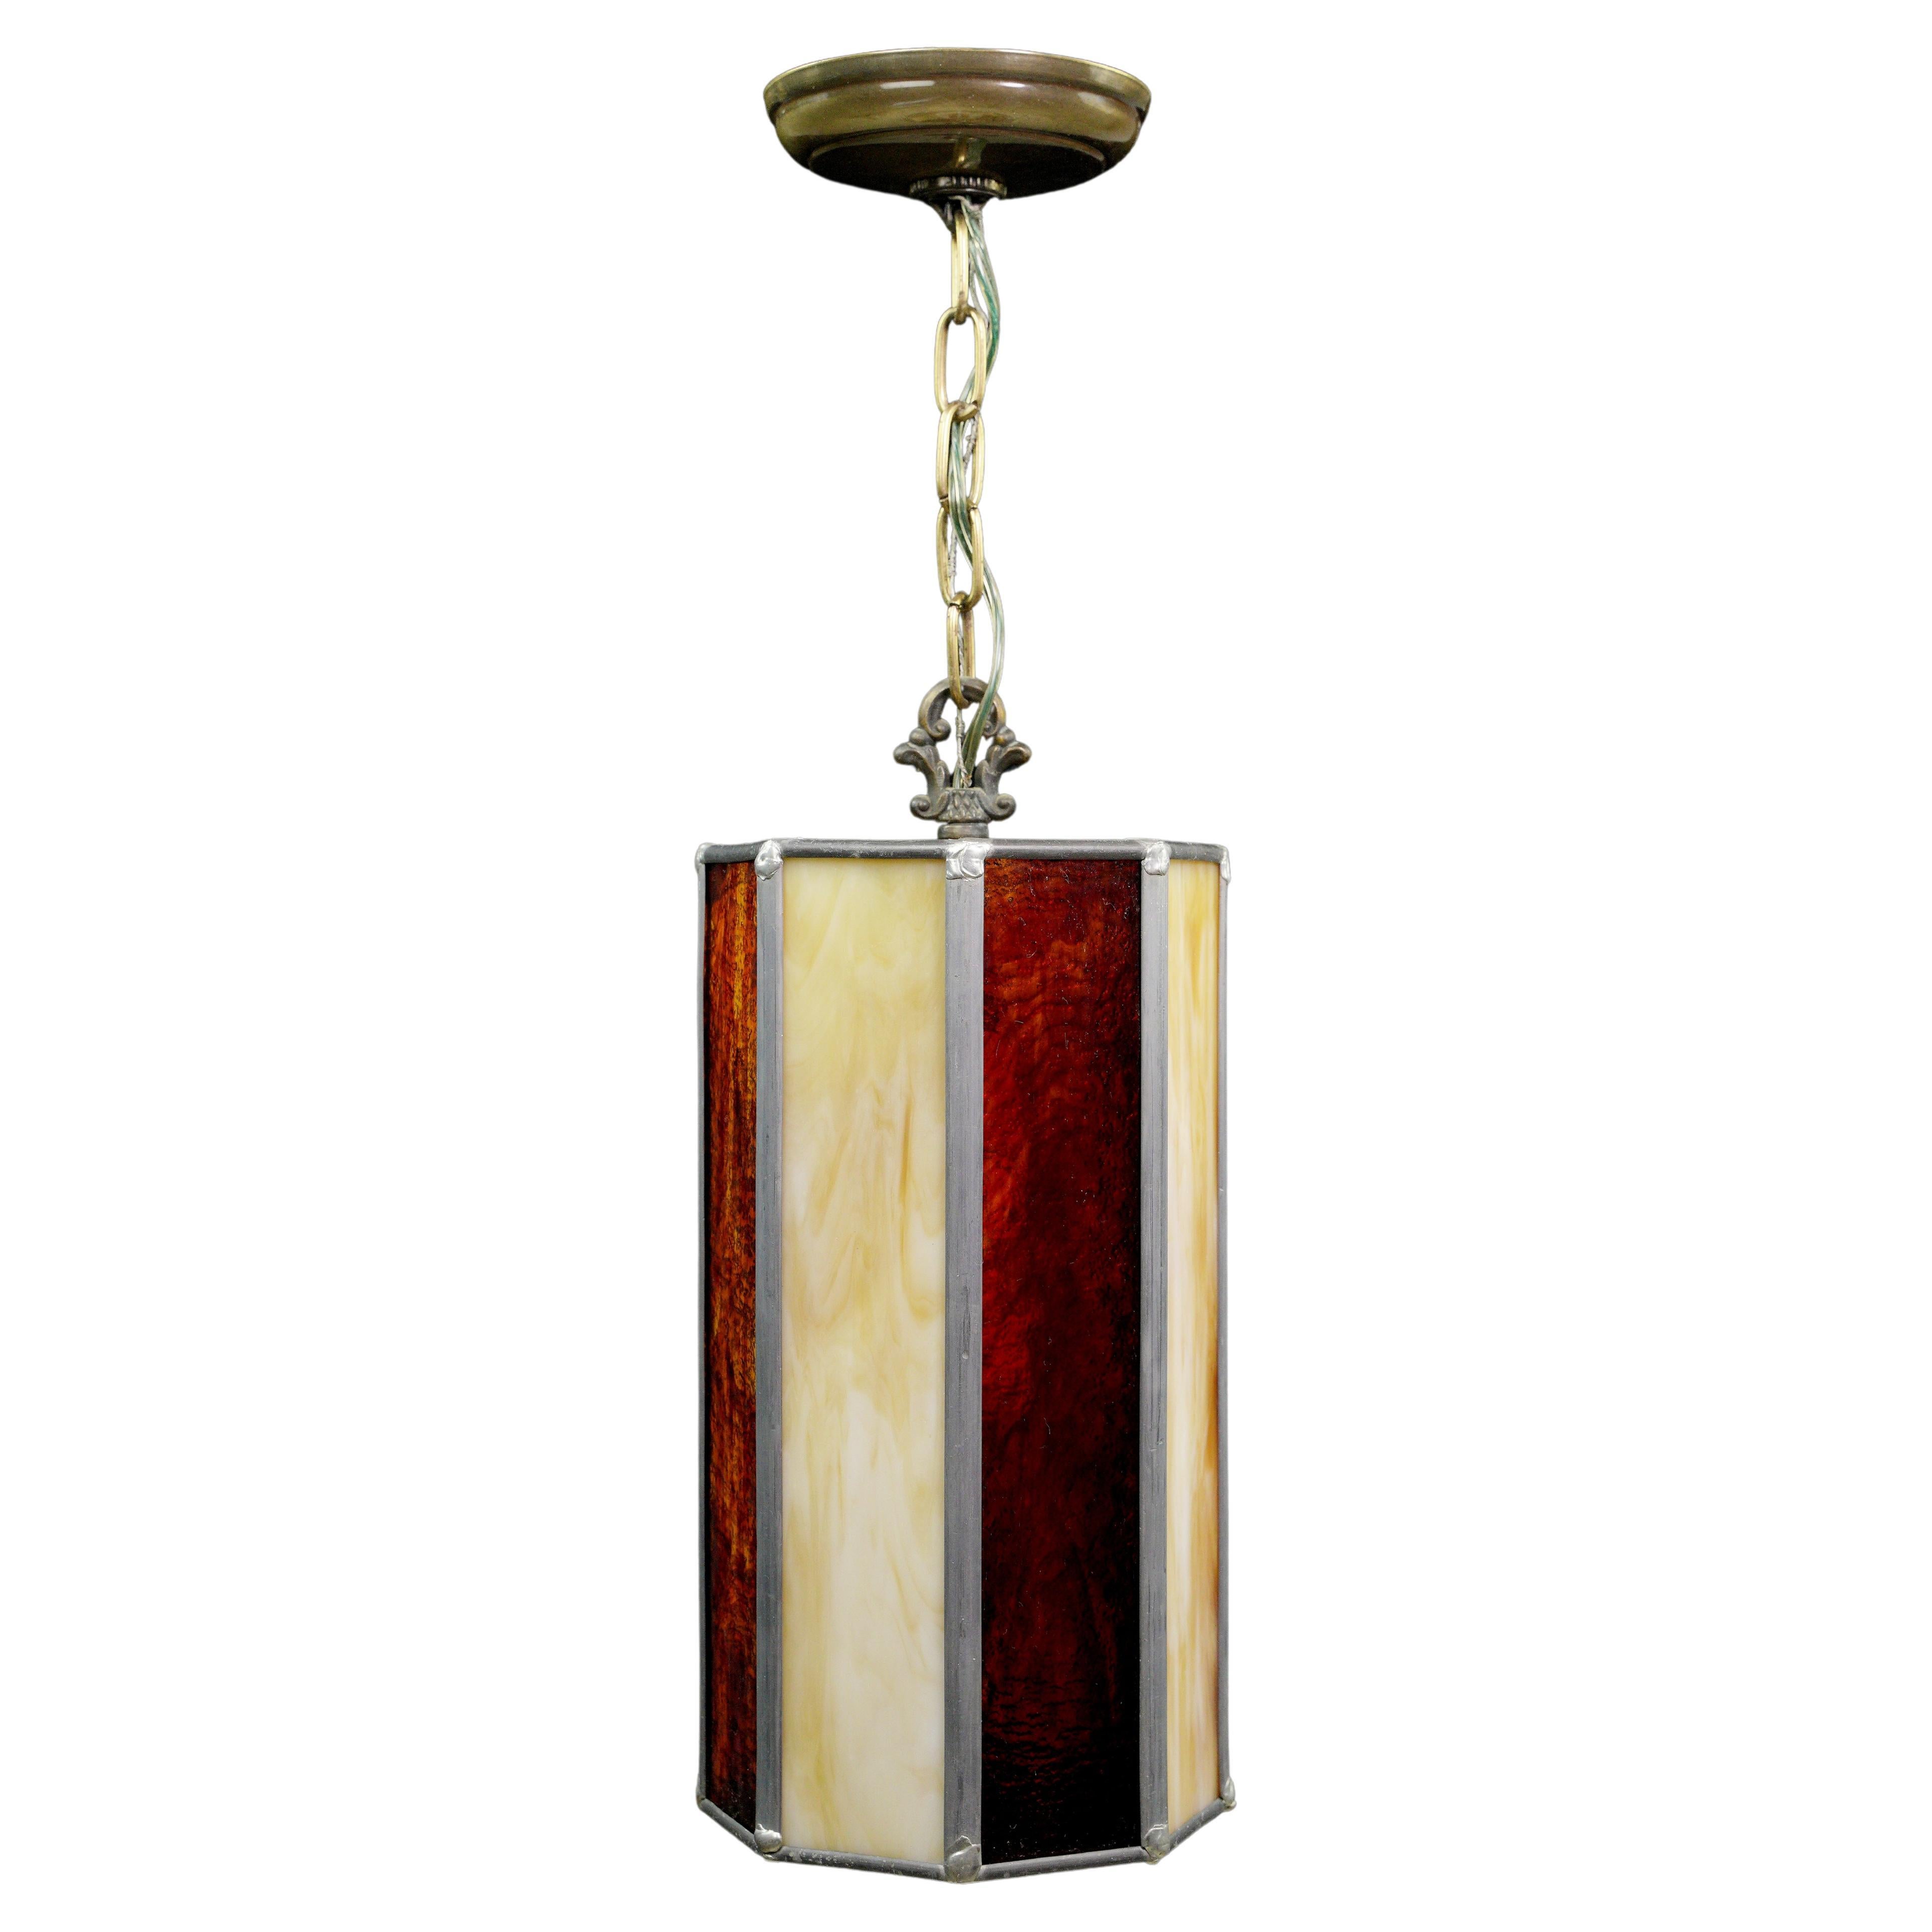 Lampe pendante à chaîne en laiton avec vitrail plombé rouge Tan